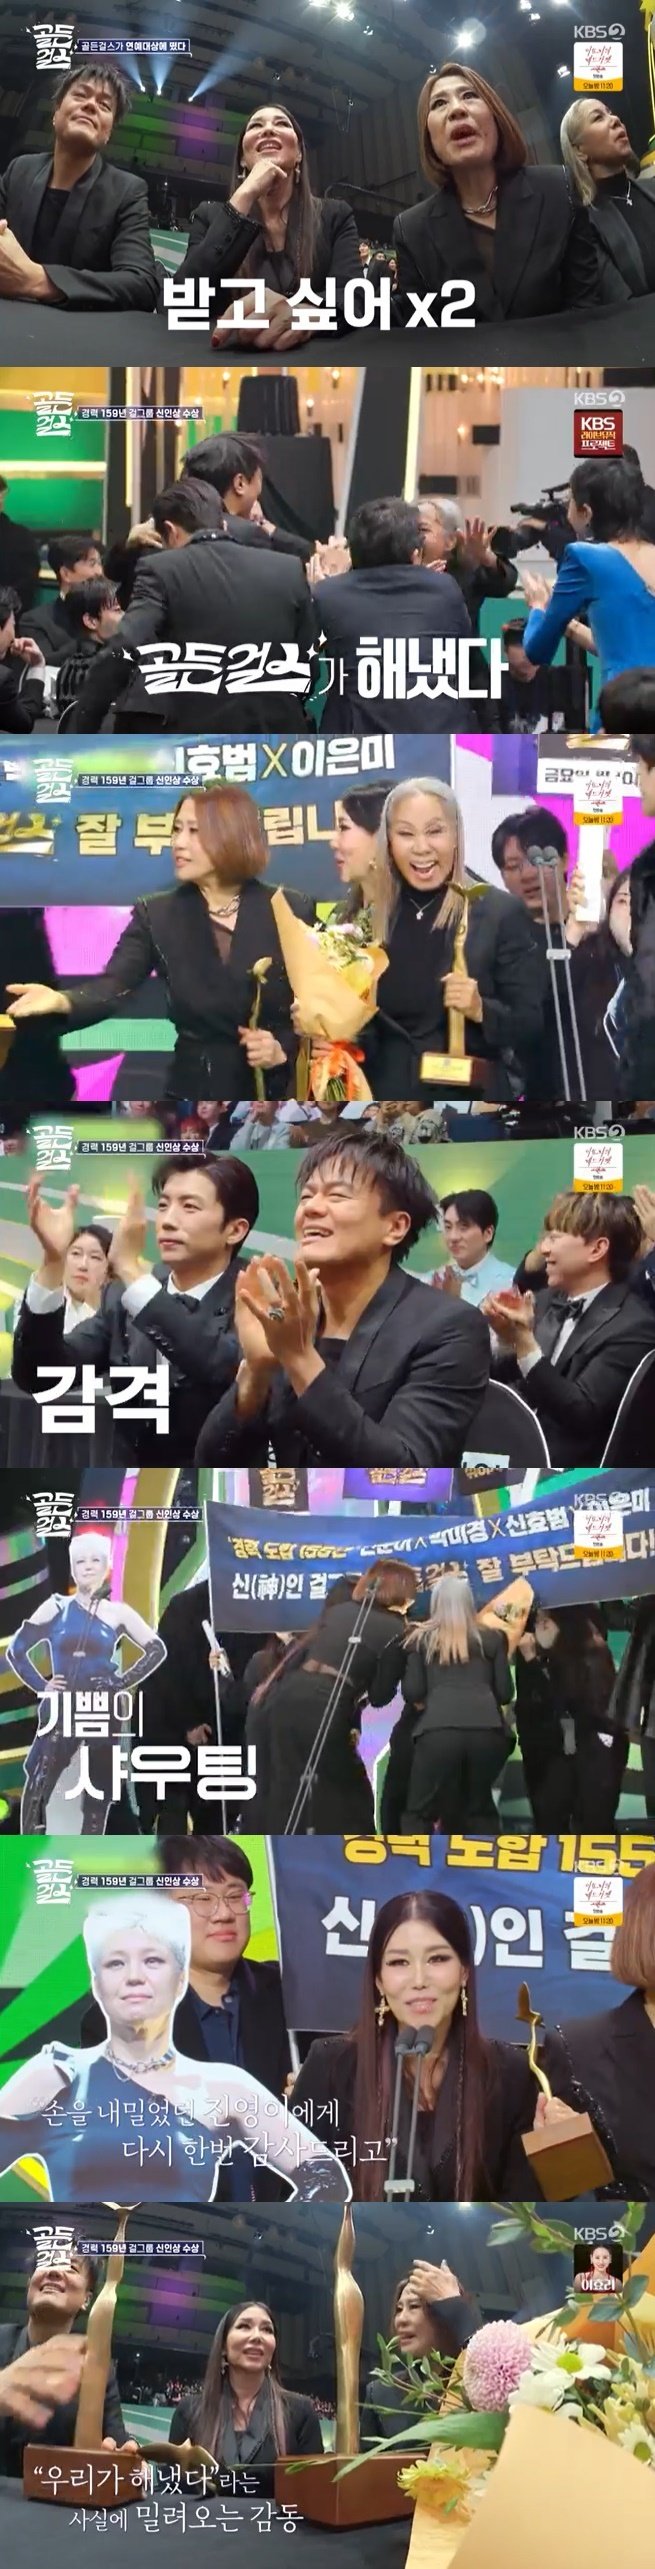 KBS 2TV '골든걸스' 캡처